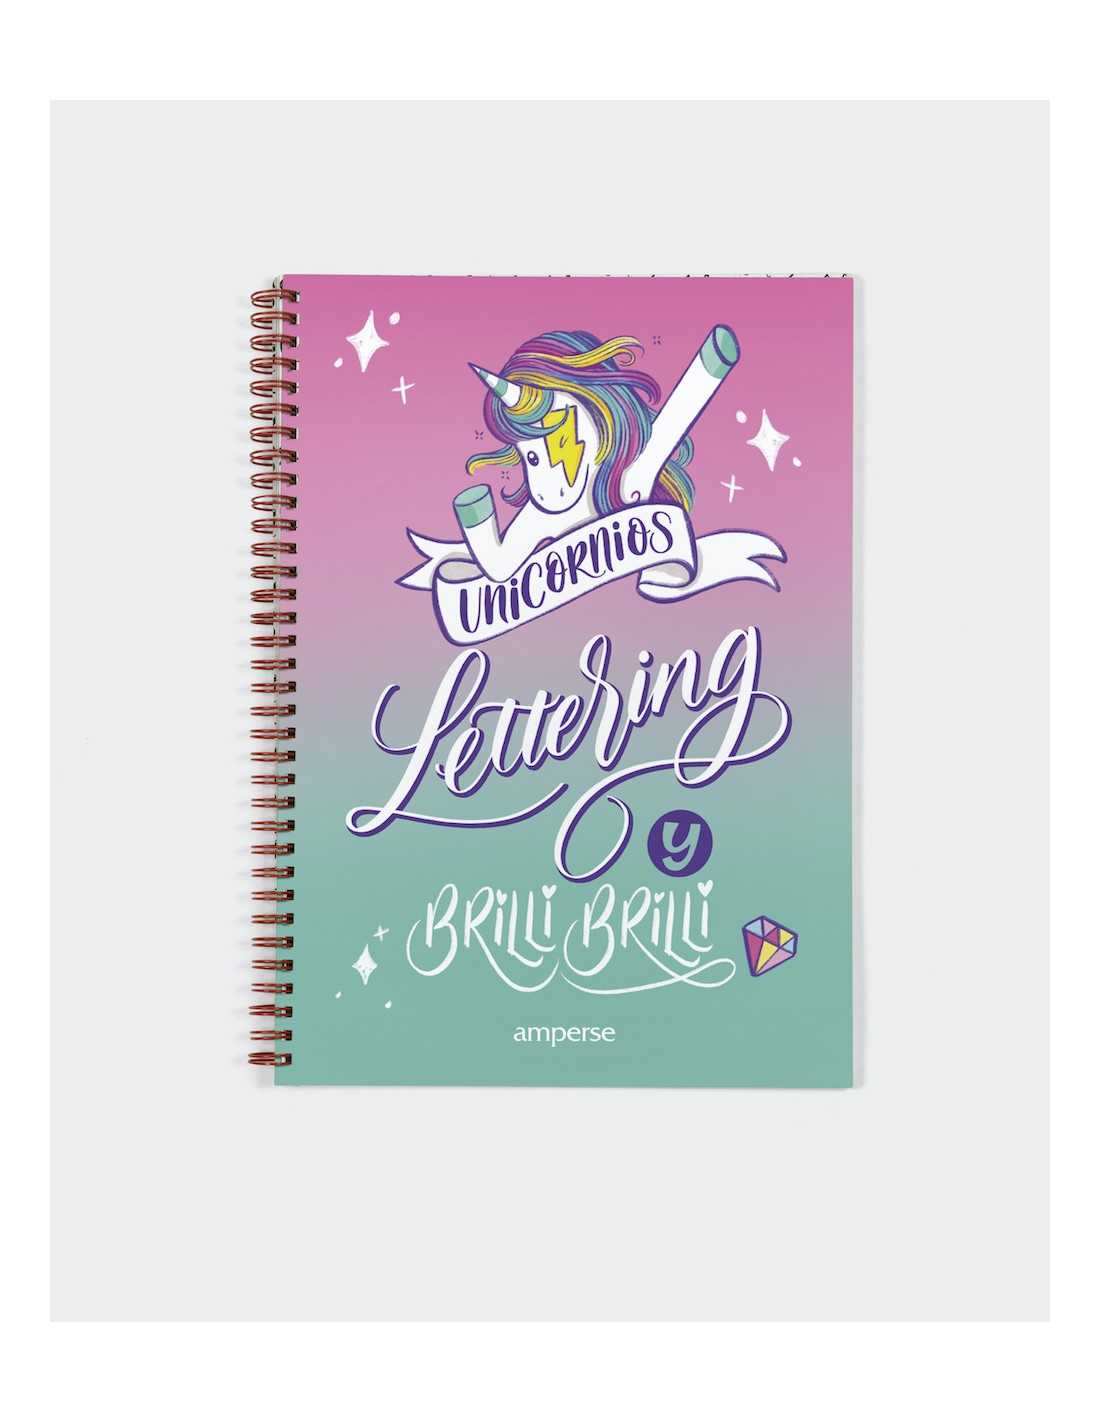 Te presentamos los cuadernos de puntos ideales para hacer “Lettering”